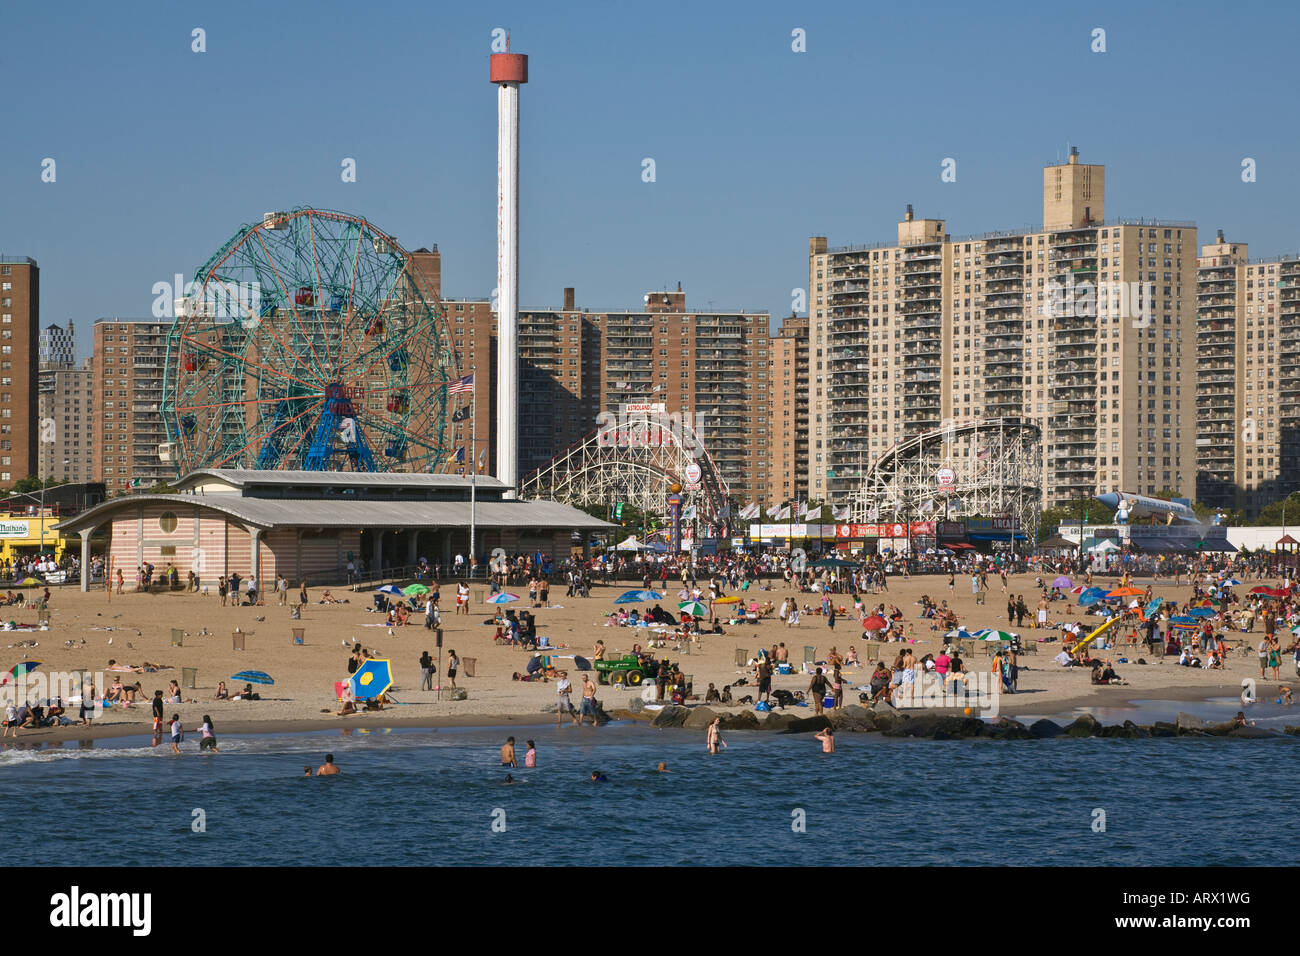 Vista dal molo del parco di divertimenti e a basso reddito sviluppi di alloggiamento di Coney island NEW YORK CITY Foto Stock